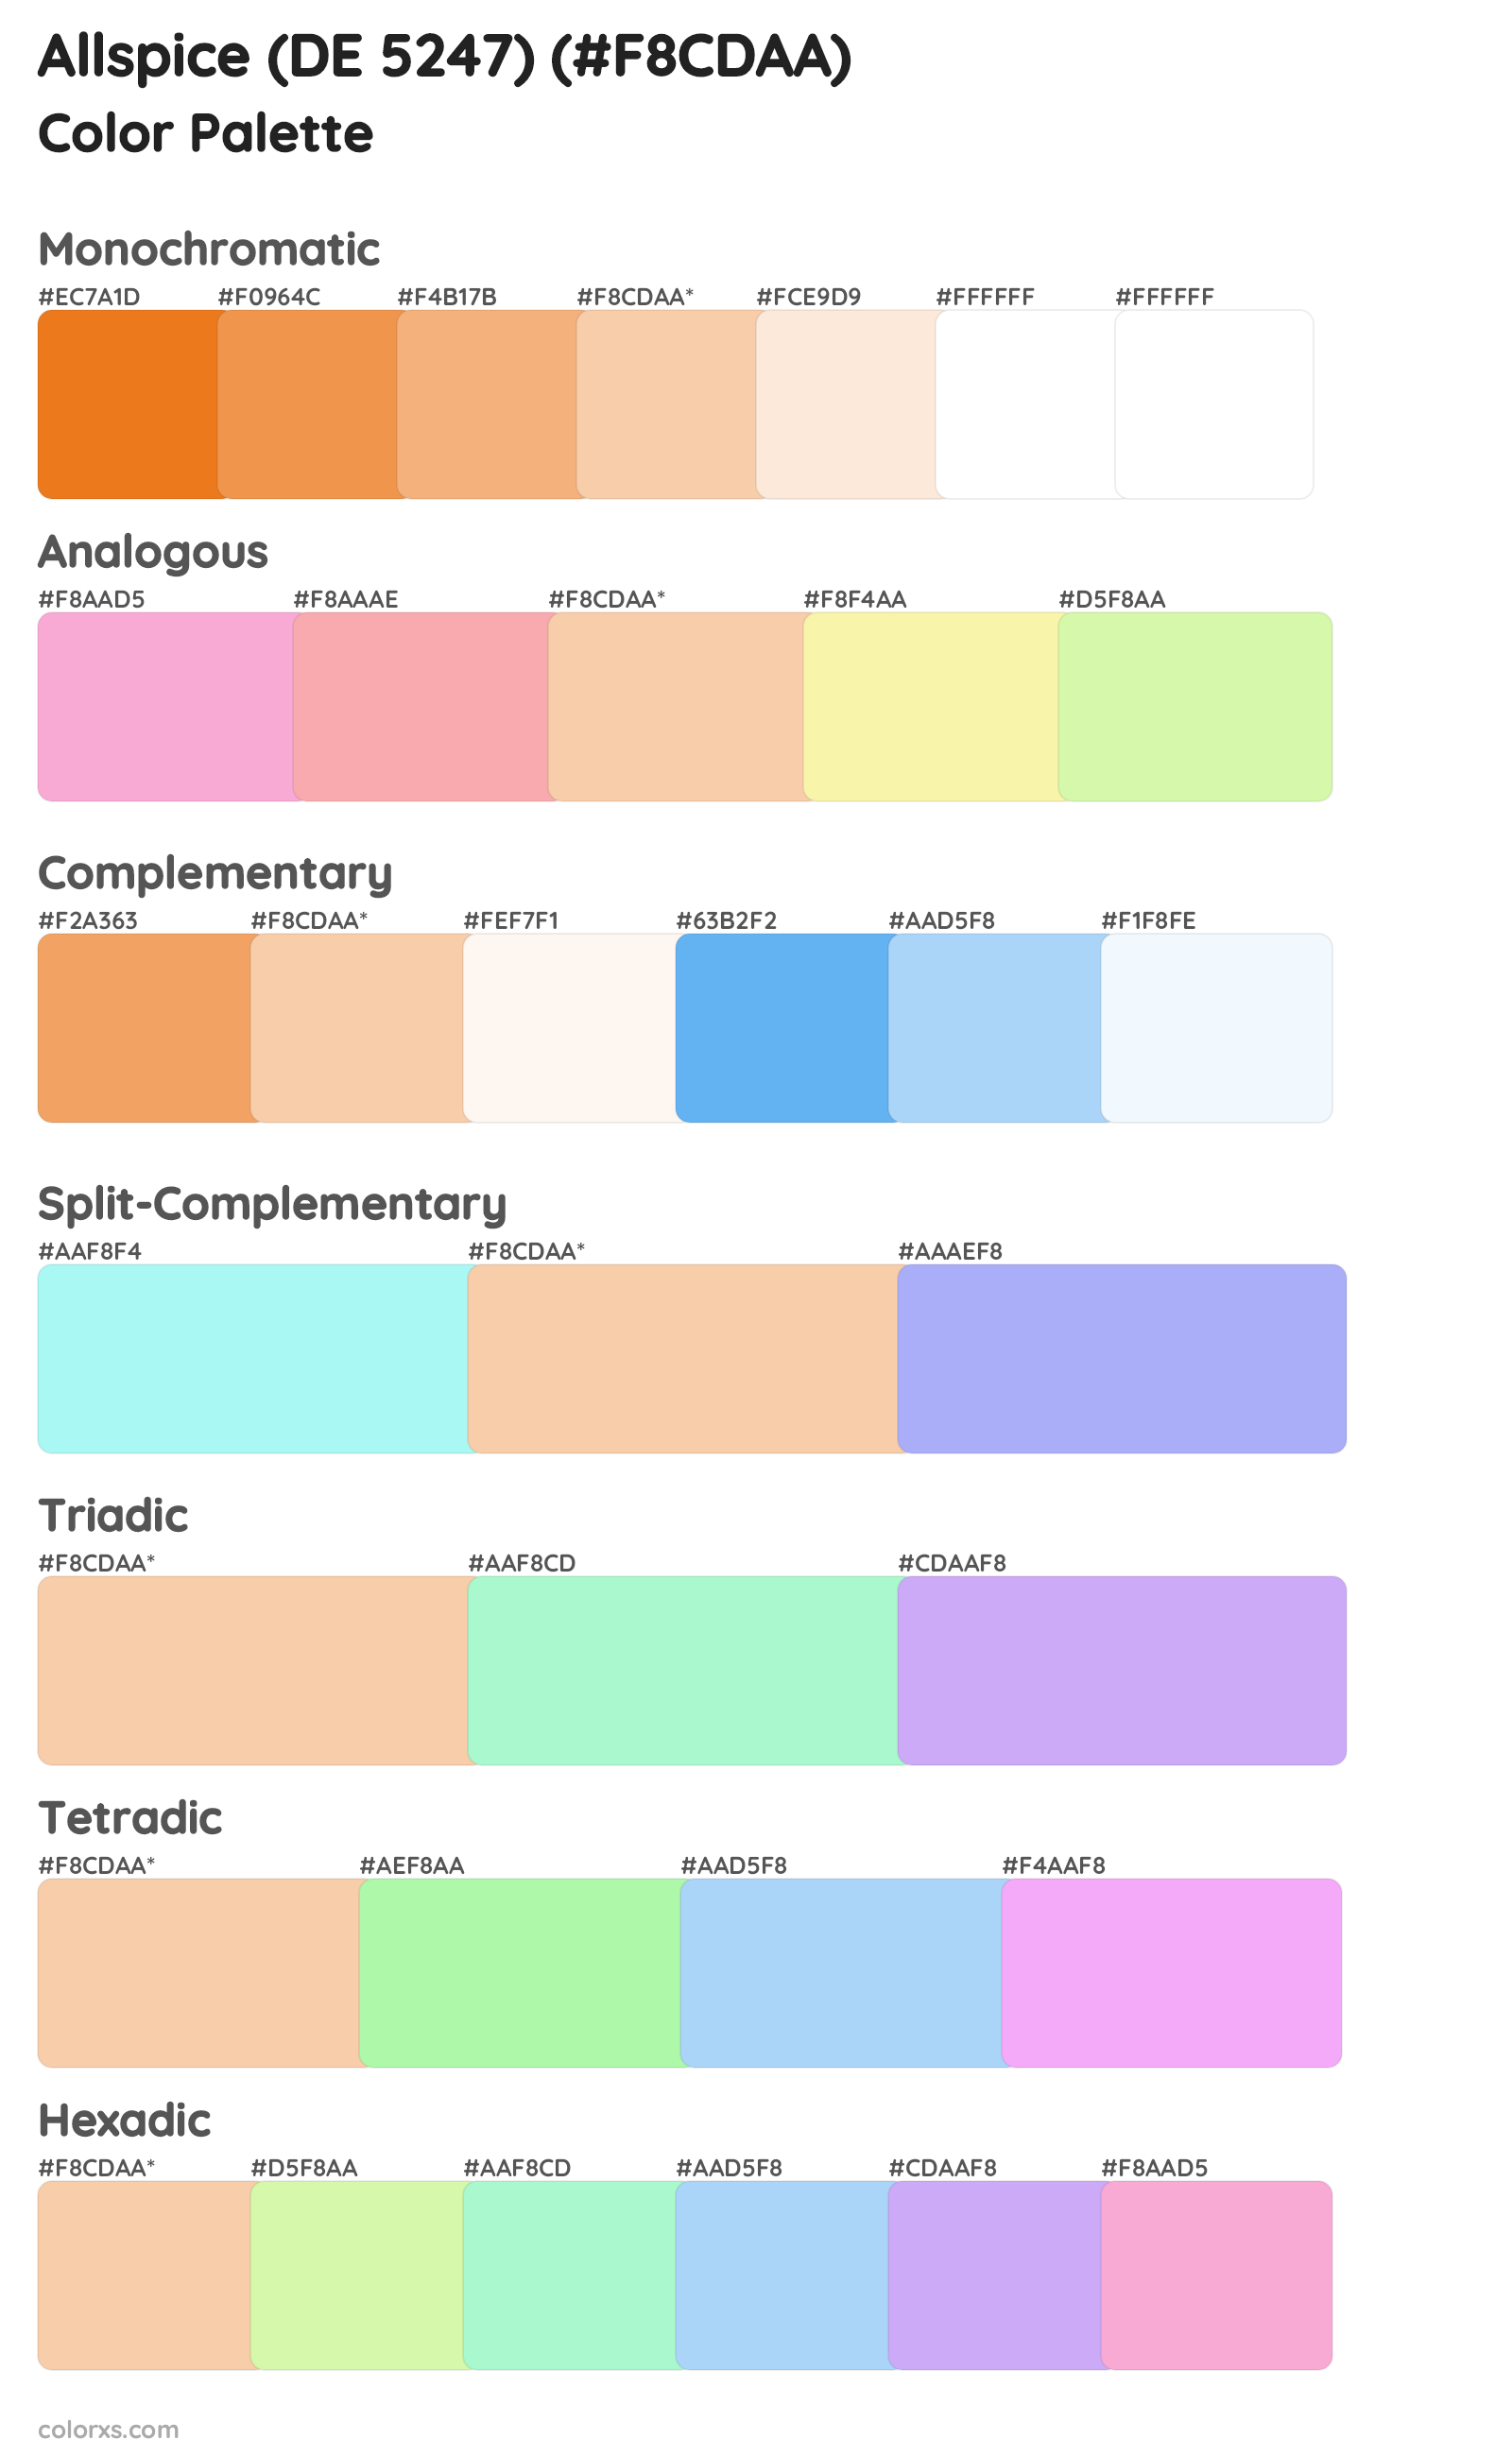 Allspice (DE 5247) Color Scheme Palettes